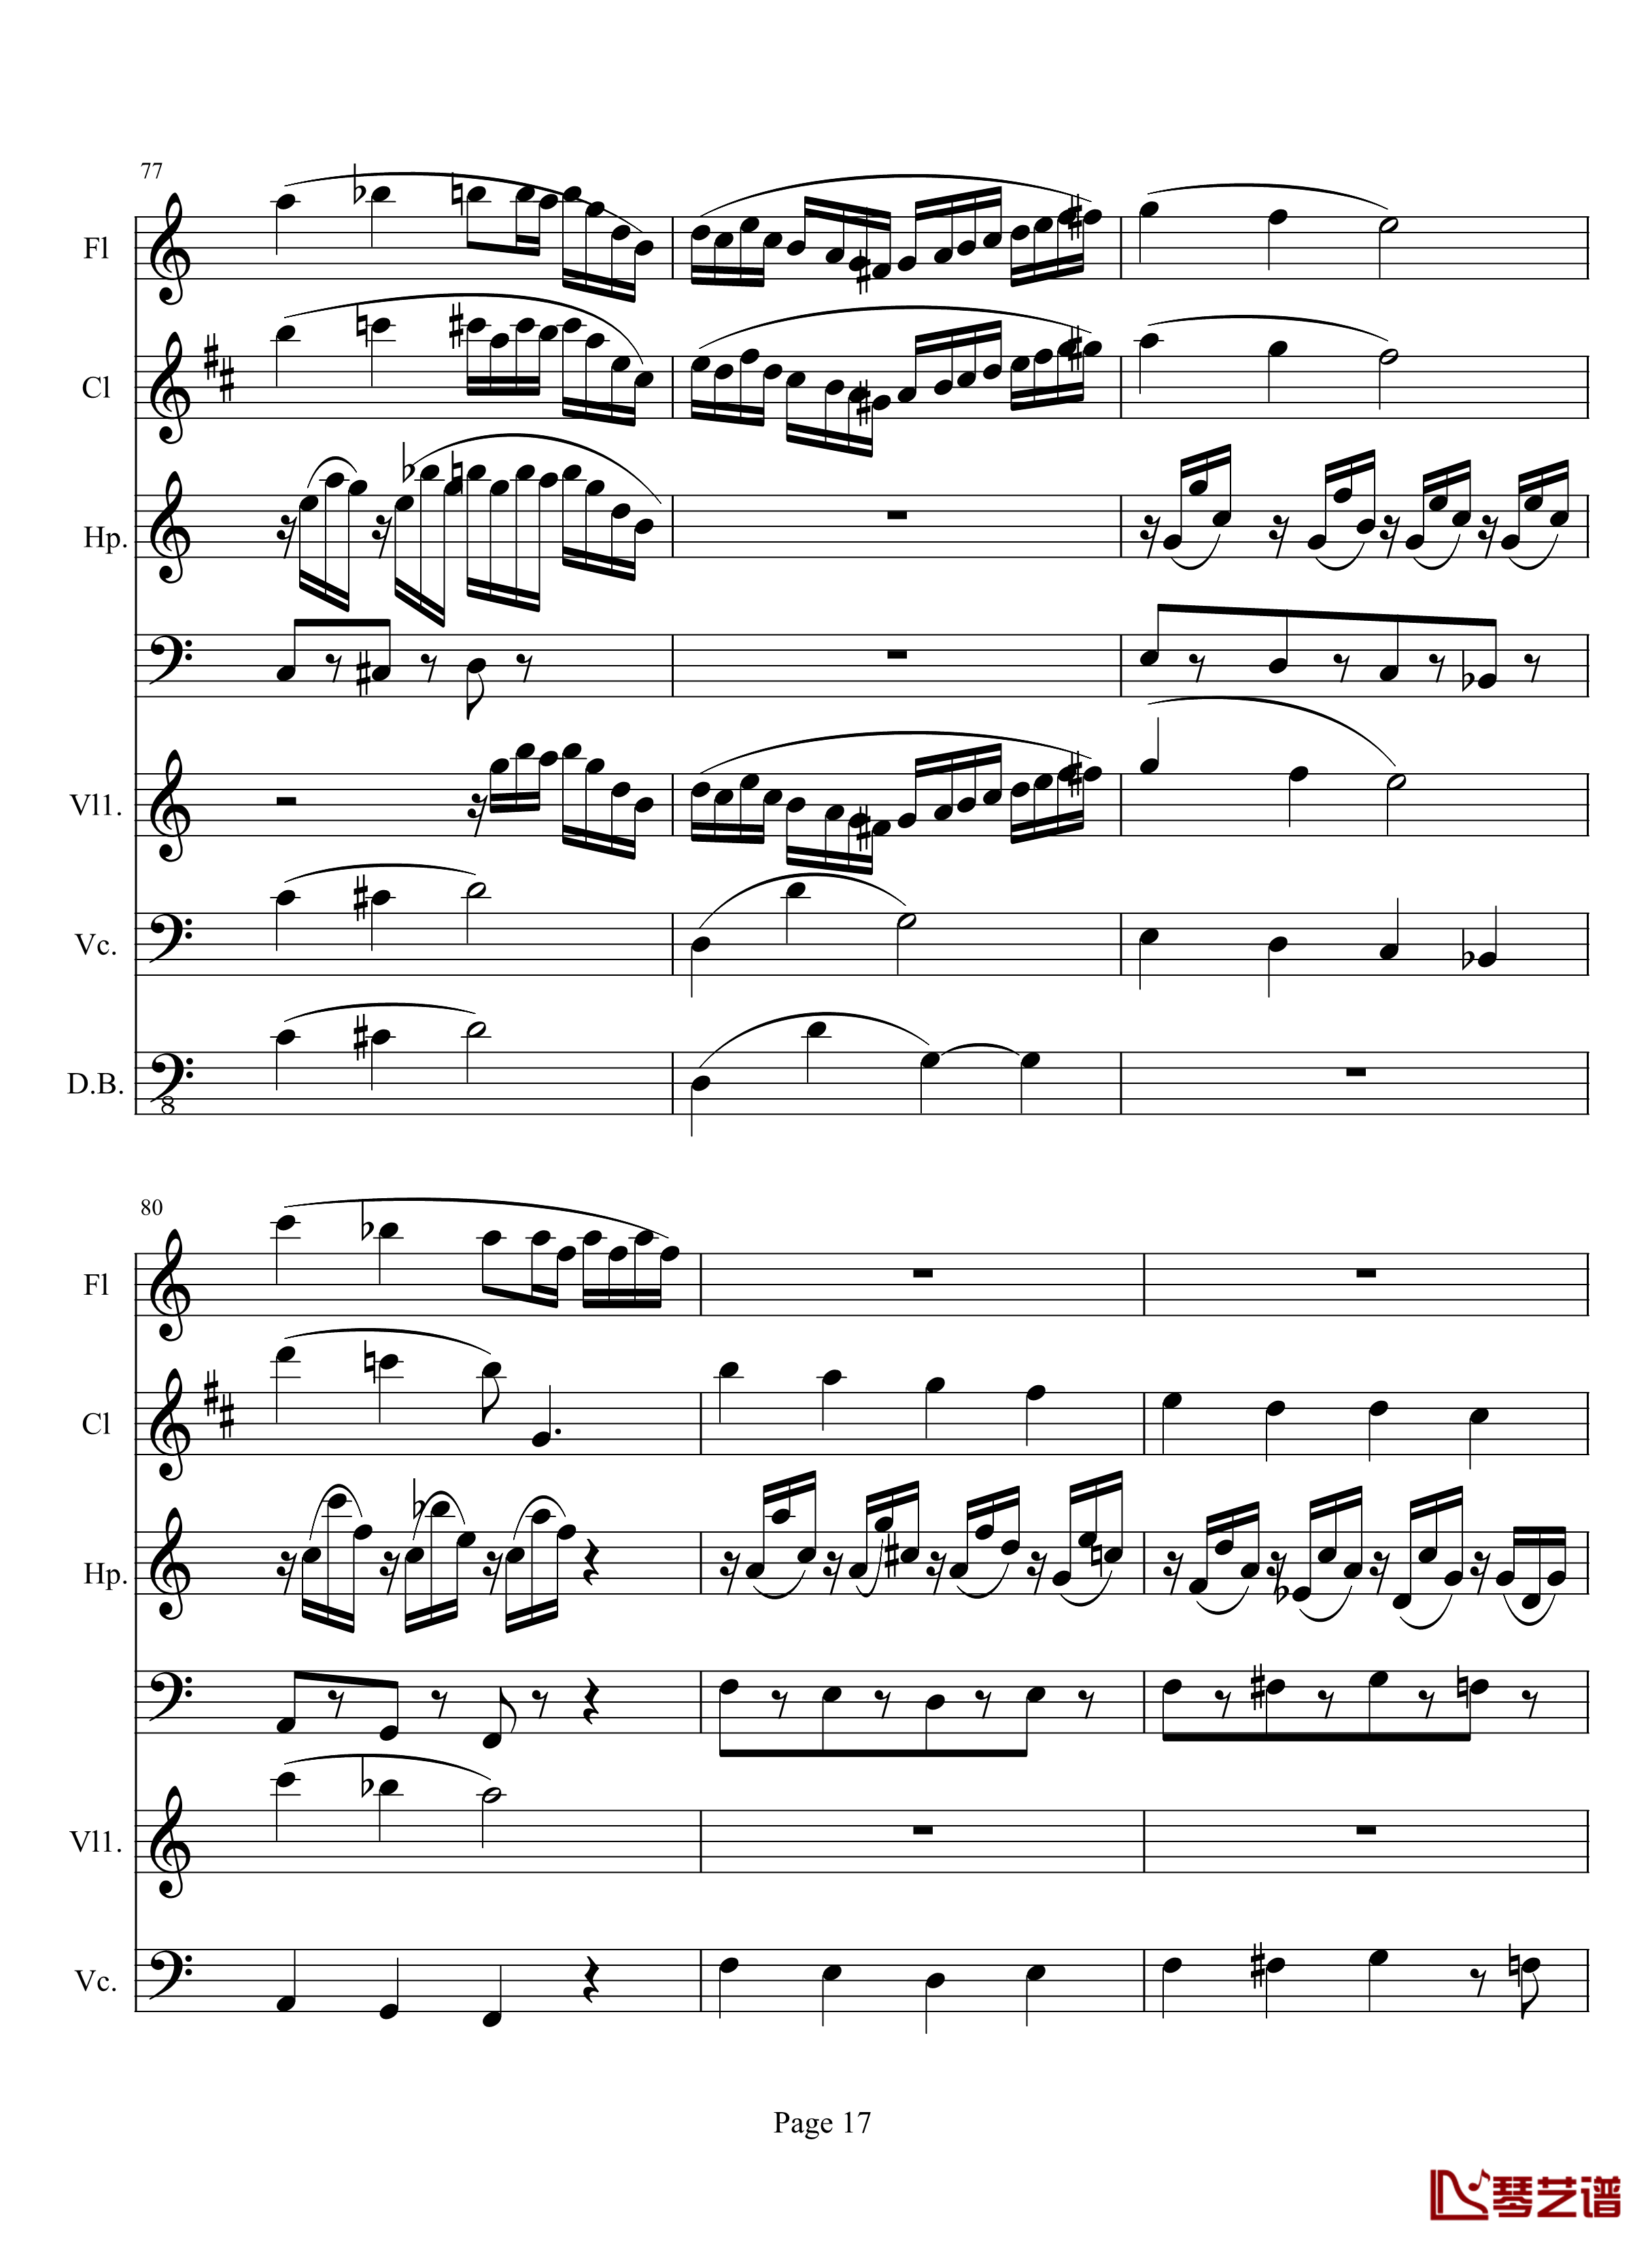 奏鸣曲之交响钢琴谱-第10首-2-贝多芬-beethoven17